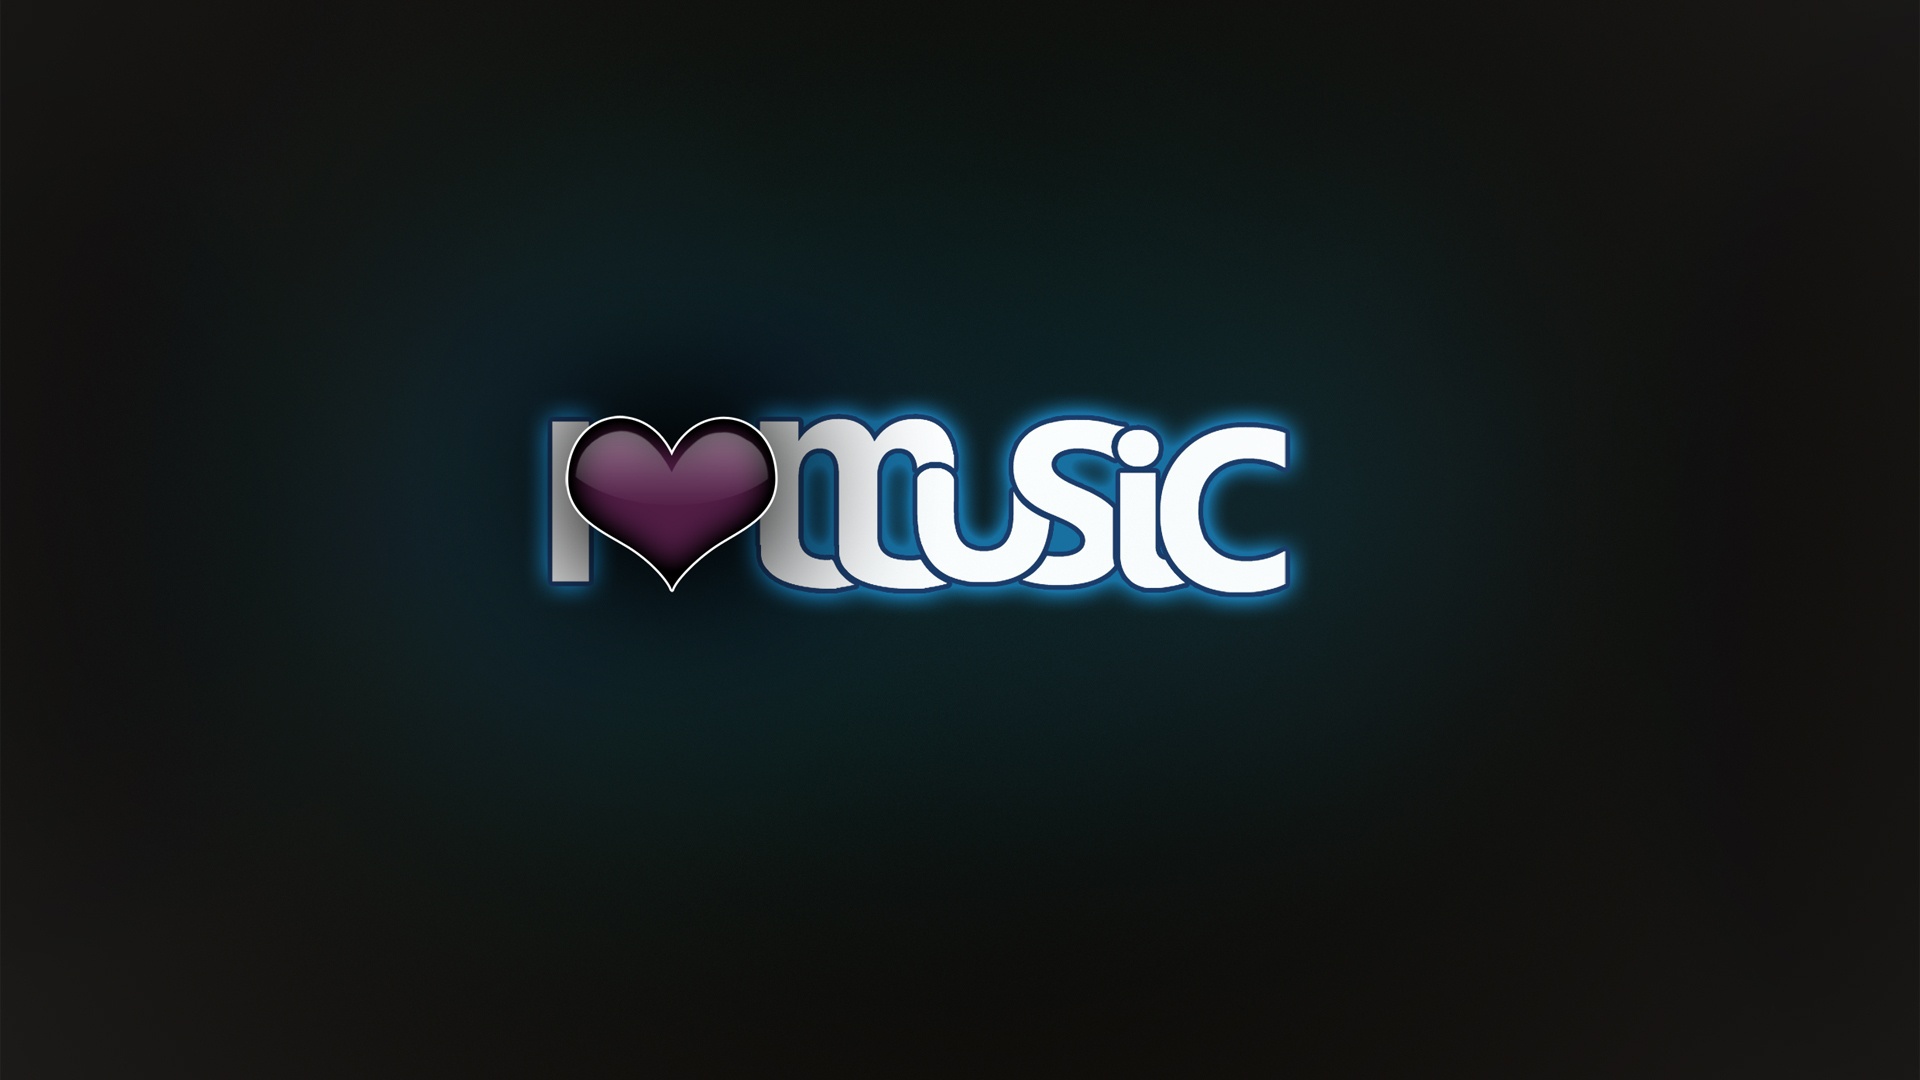 I-Love-Music-Images.jpg